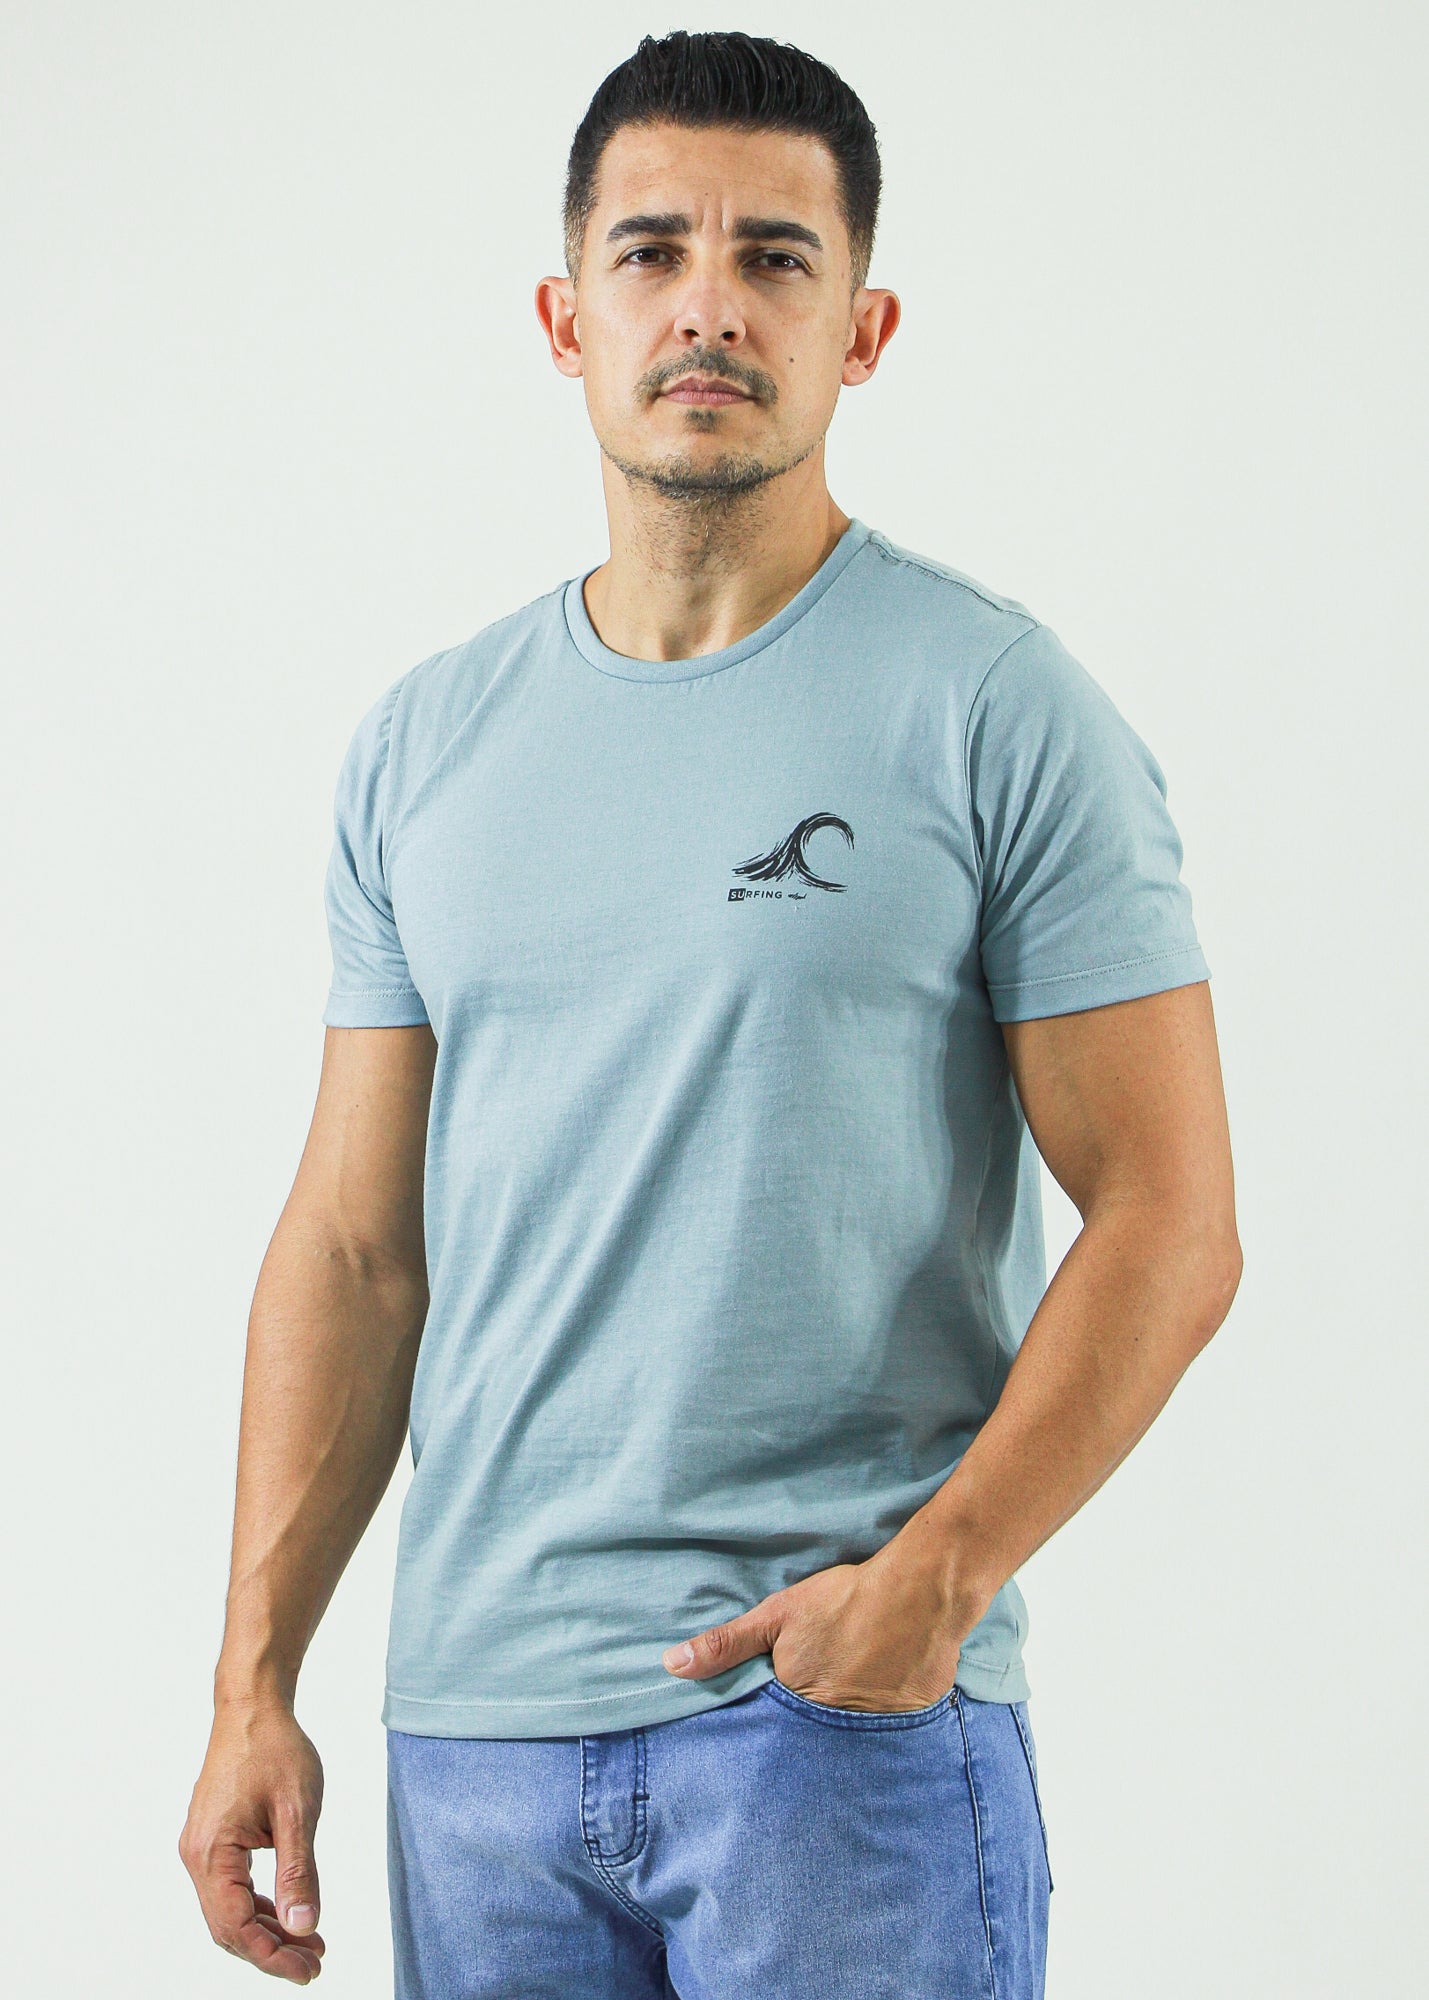 Camiseta Estampada Surfing - Cinza